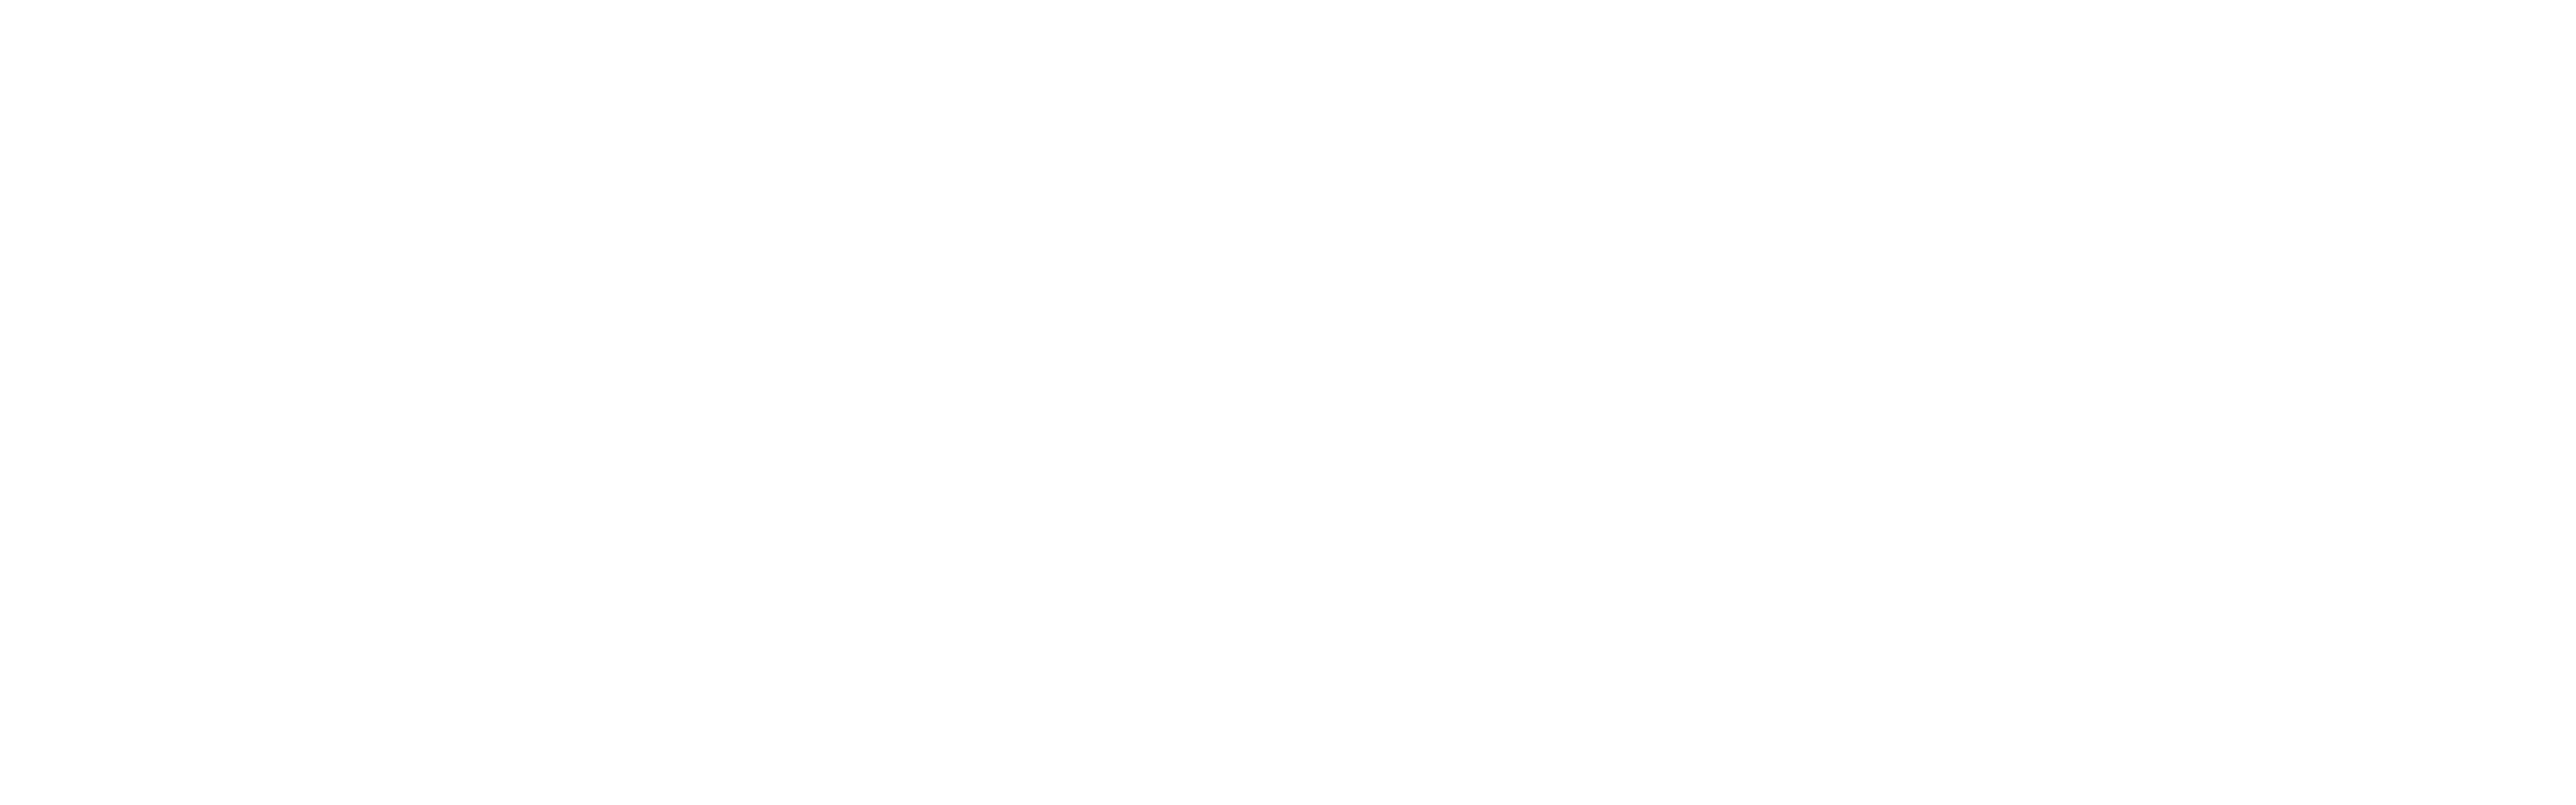 mazzuma white logo image